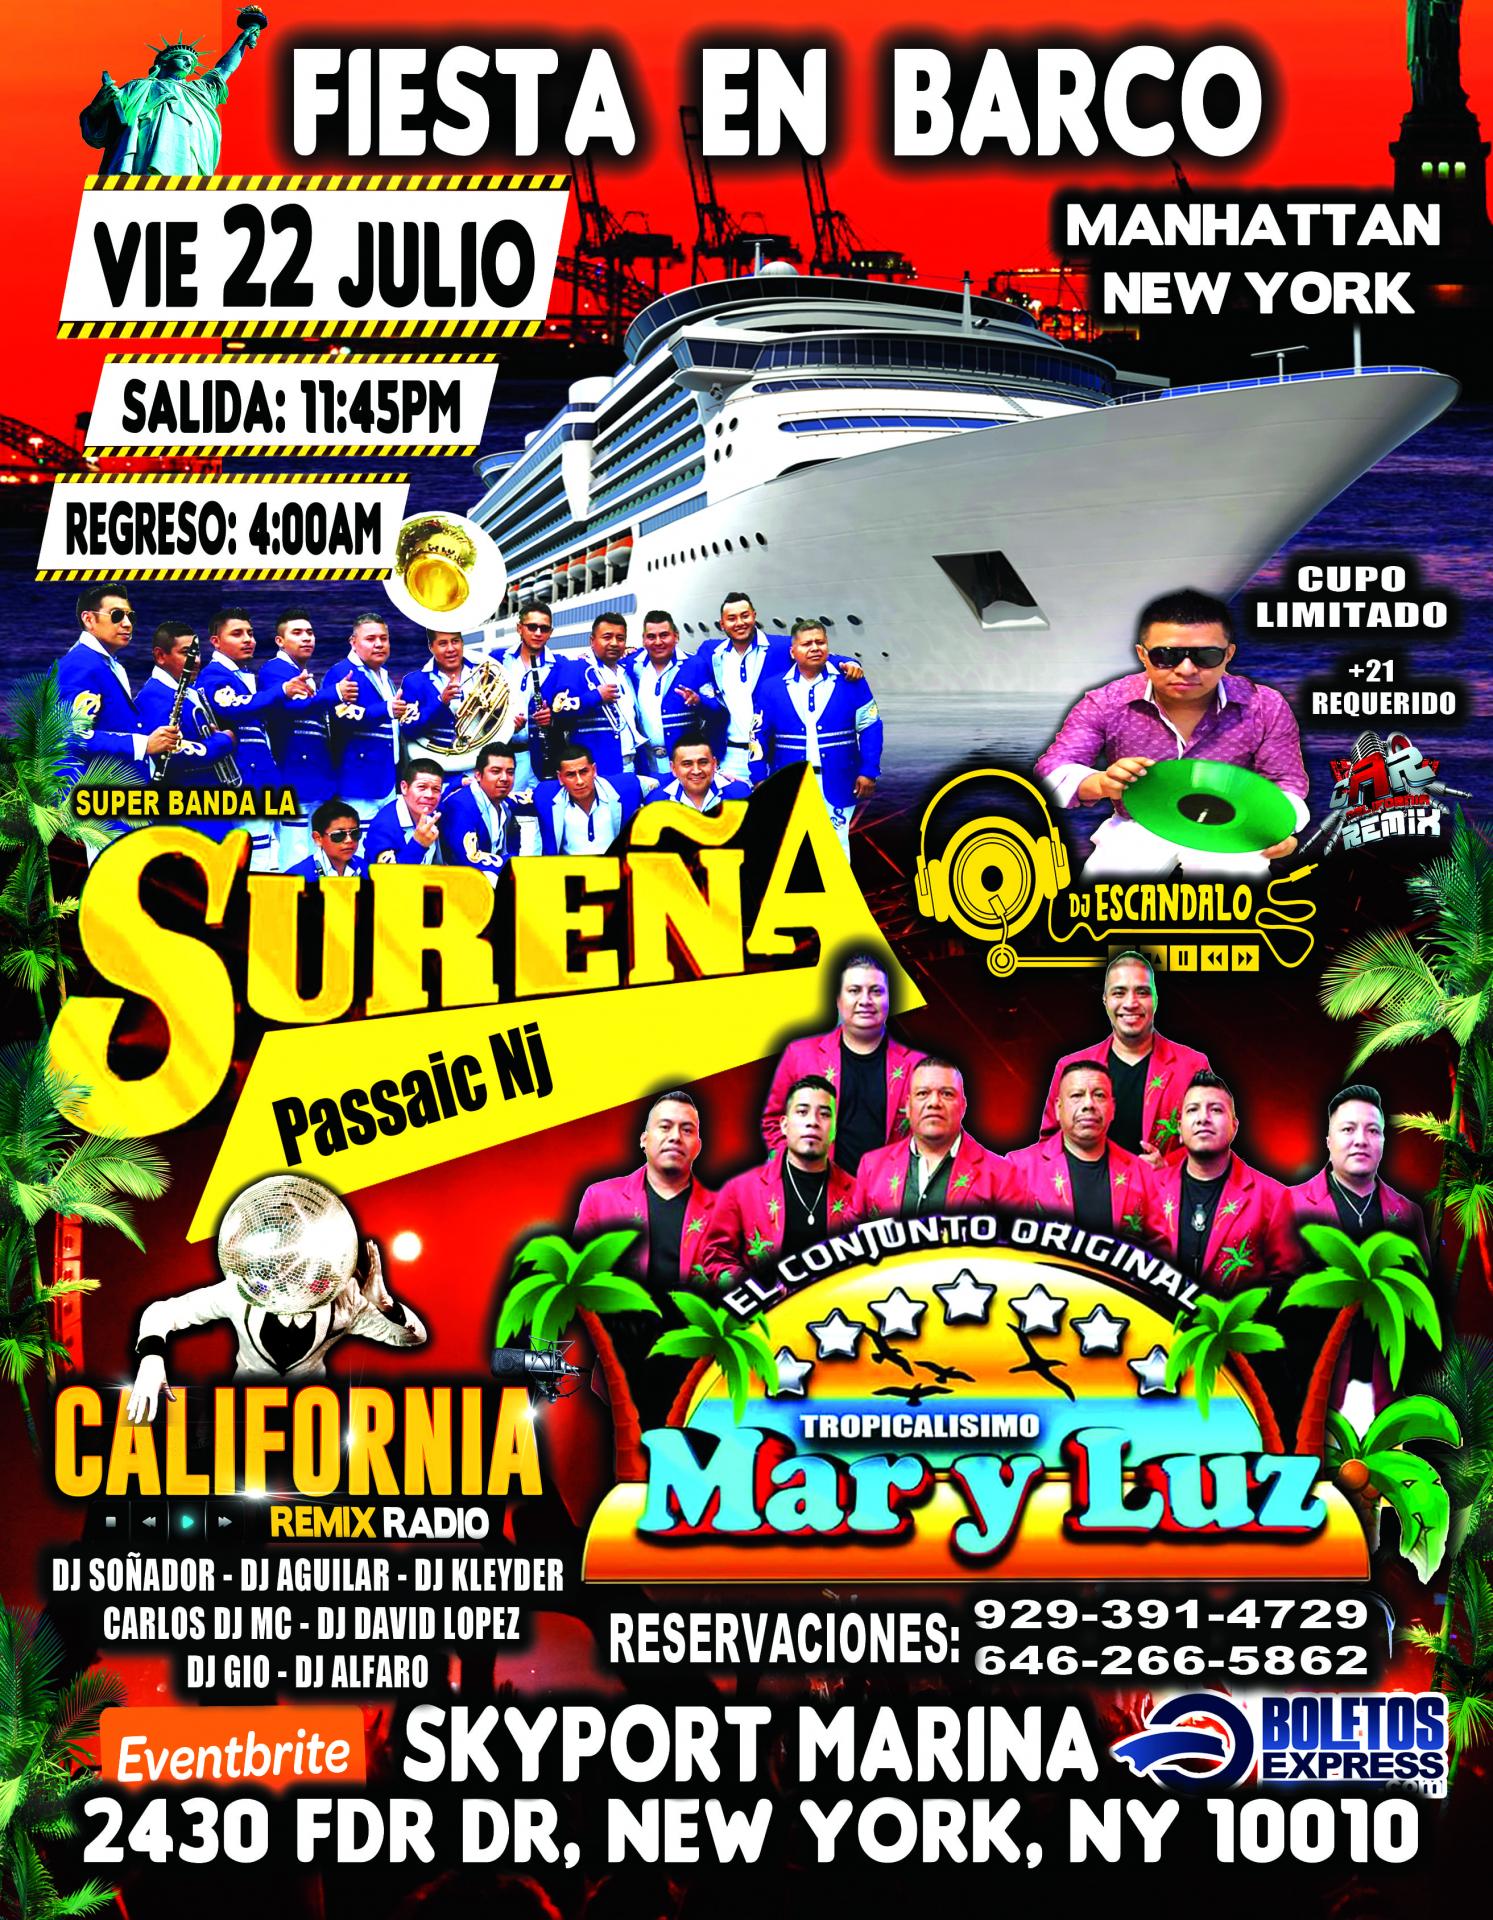 Fiesta En Barco En Manhattan Ny + Banda Surena + Mar y luz + Radio Dj's + Dos Pisos De Musica Diferente